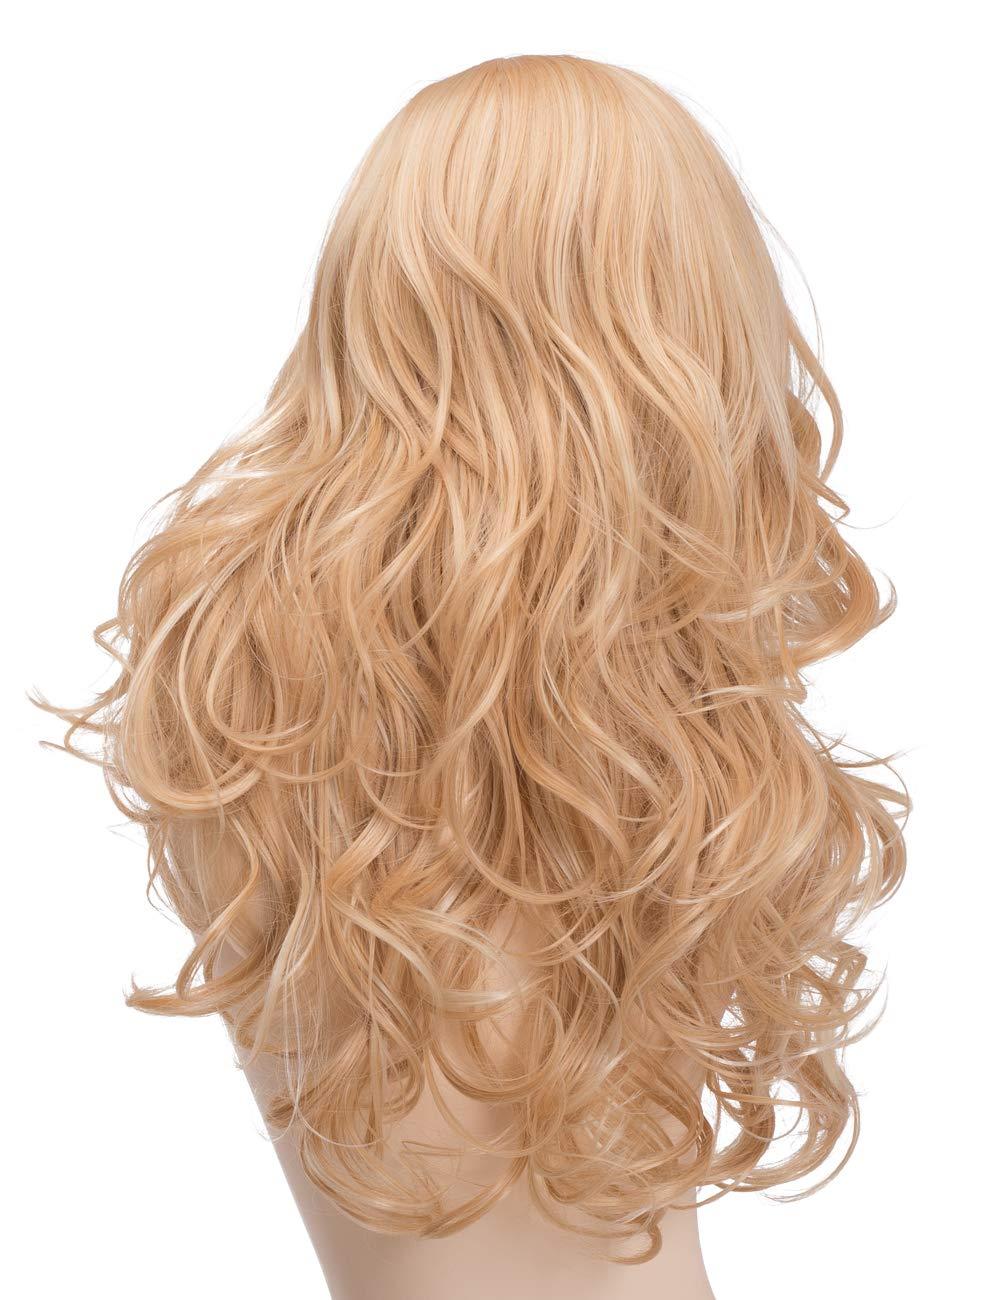 Изображение товара: BESTUNG смешанные блондинки крупные волны синтетические волосы длинные волнистые вьющиеся волосы парики для женщин 2 оттенка Золотой/светлый